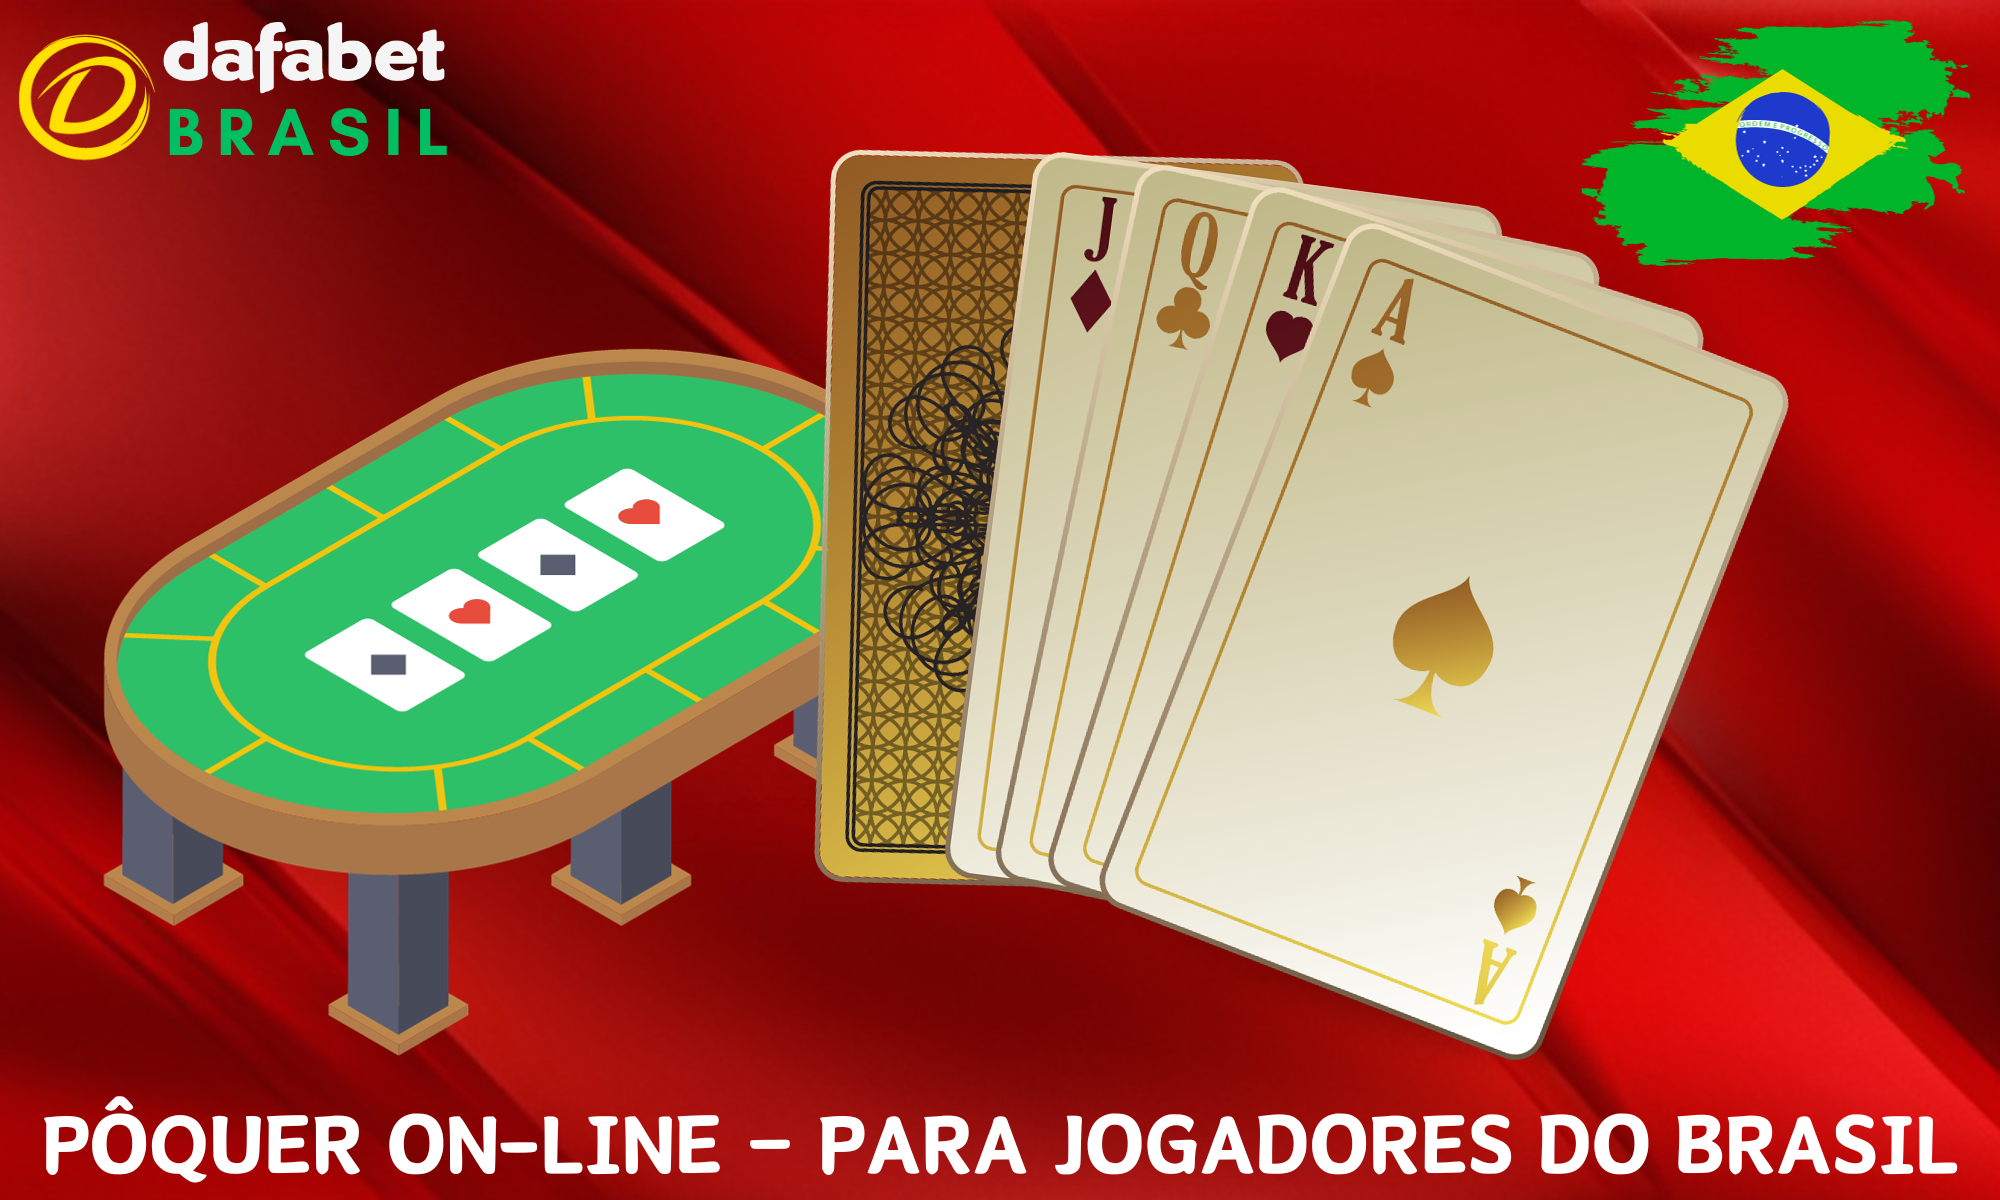 O pôquer na Dafabet é um dos formatos de jogos de cassino mais populares entre os jogadores do Brasil